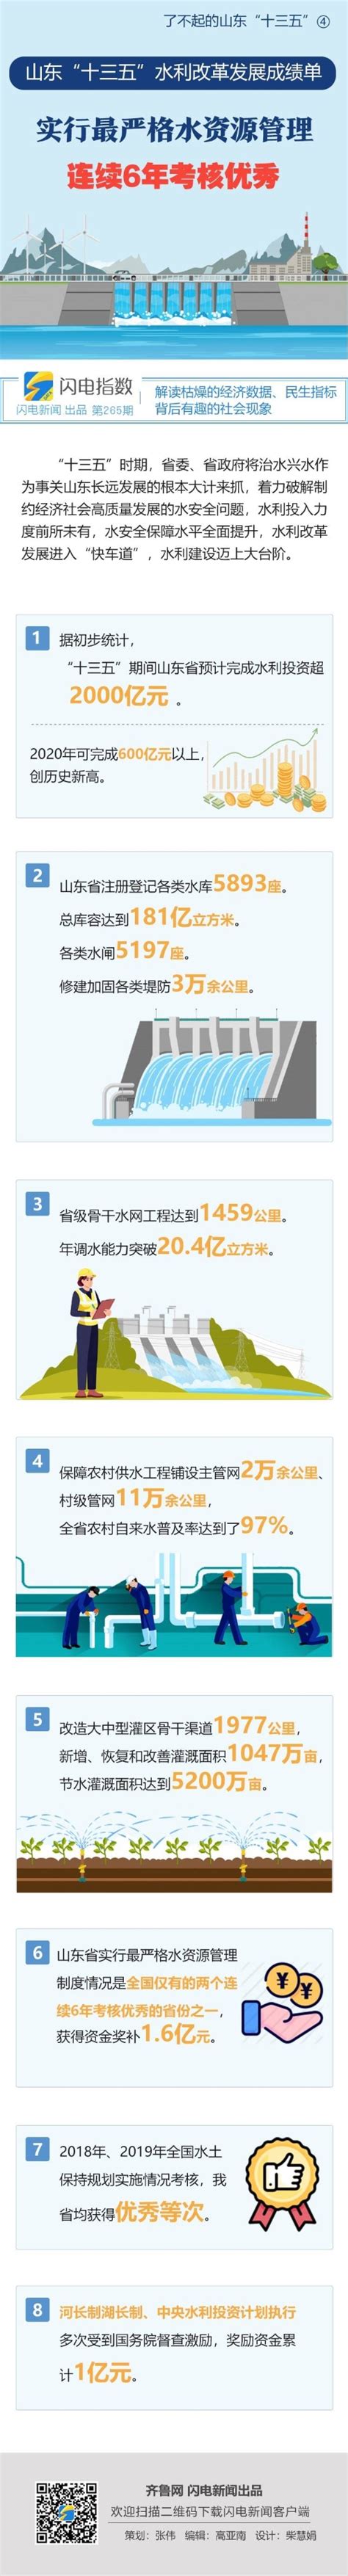 赤峰惠泽水利水电工程有限公司-赤峰惠泽水利水电工程有限公司